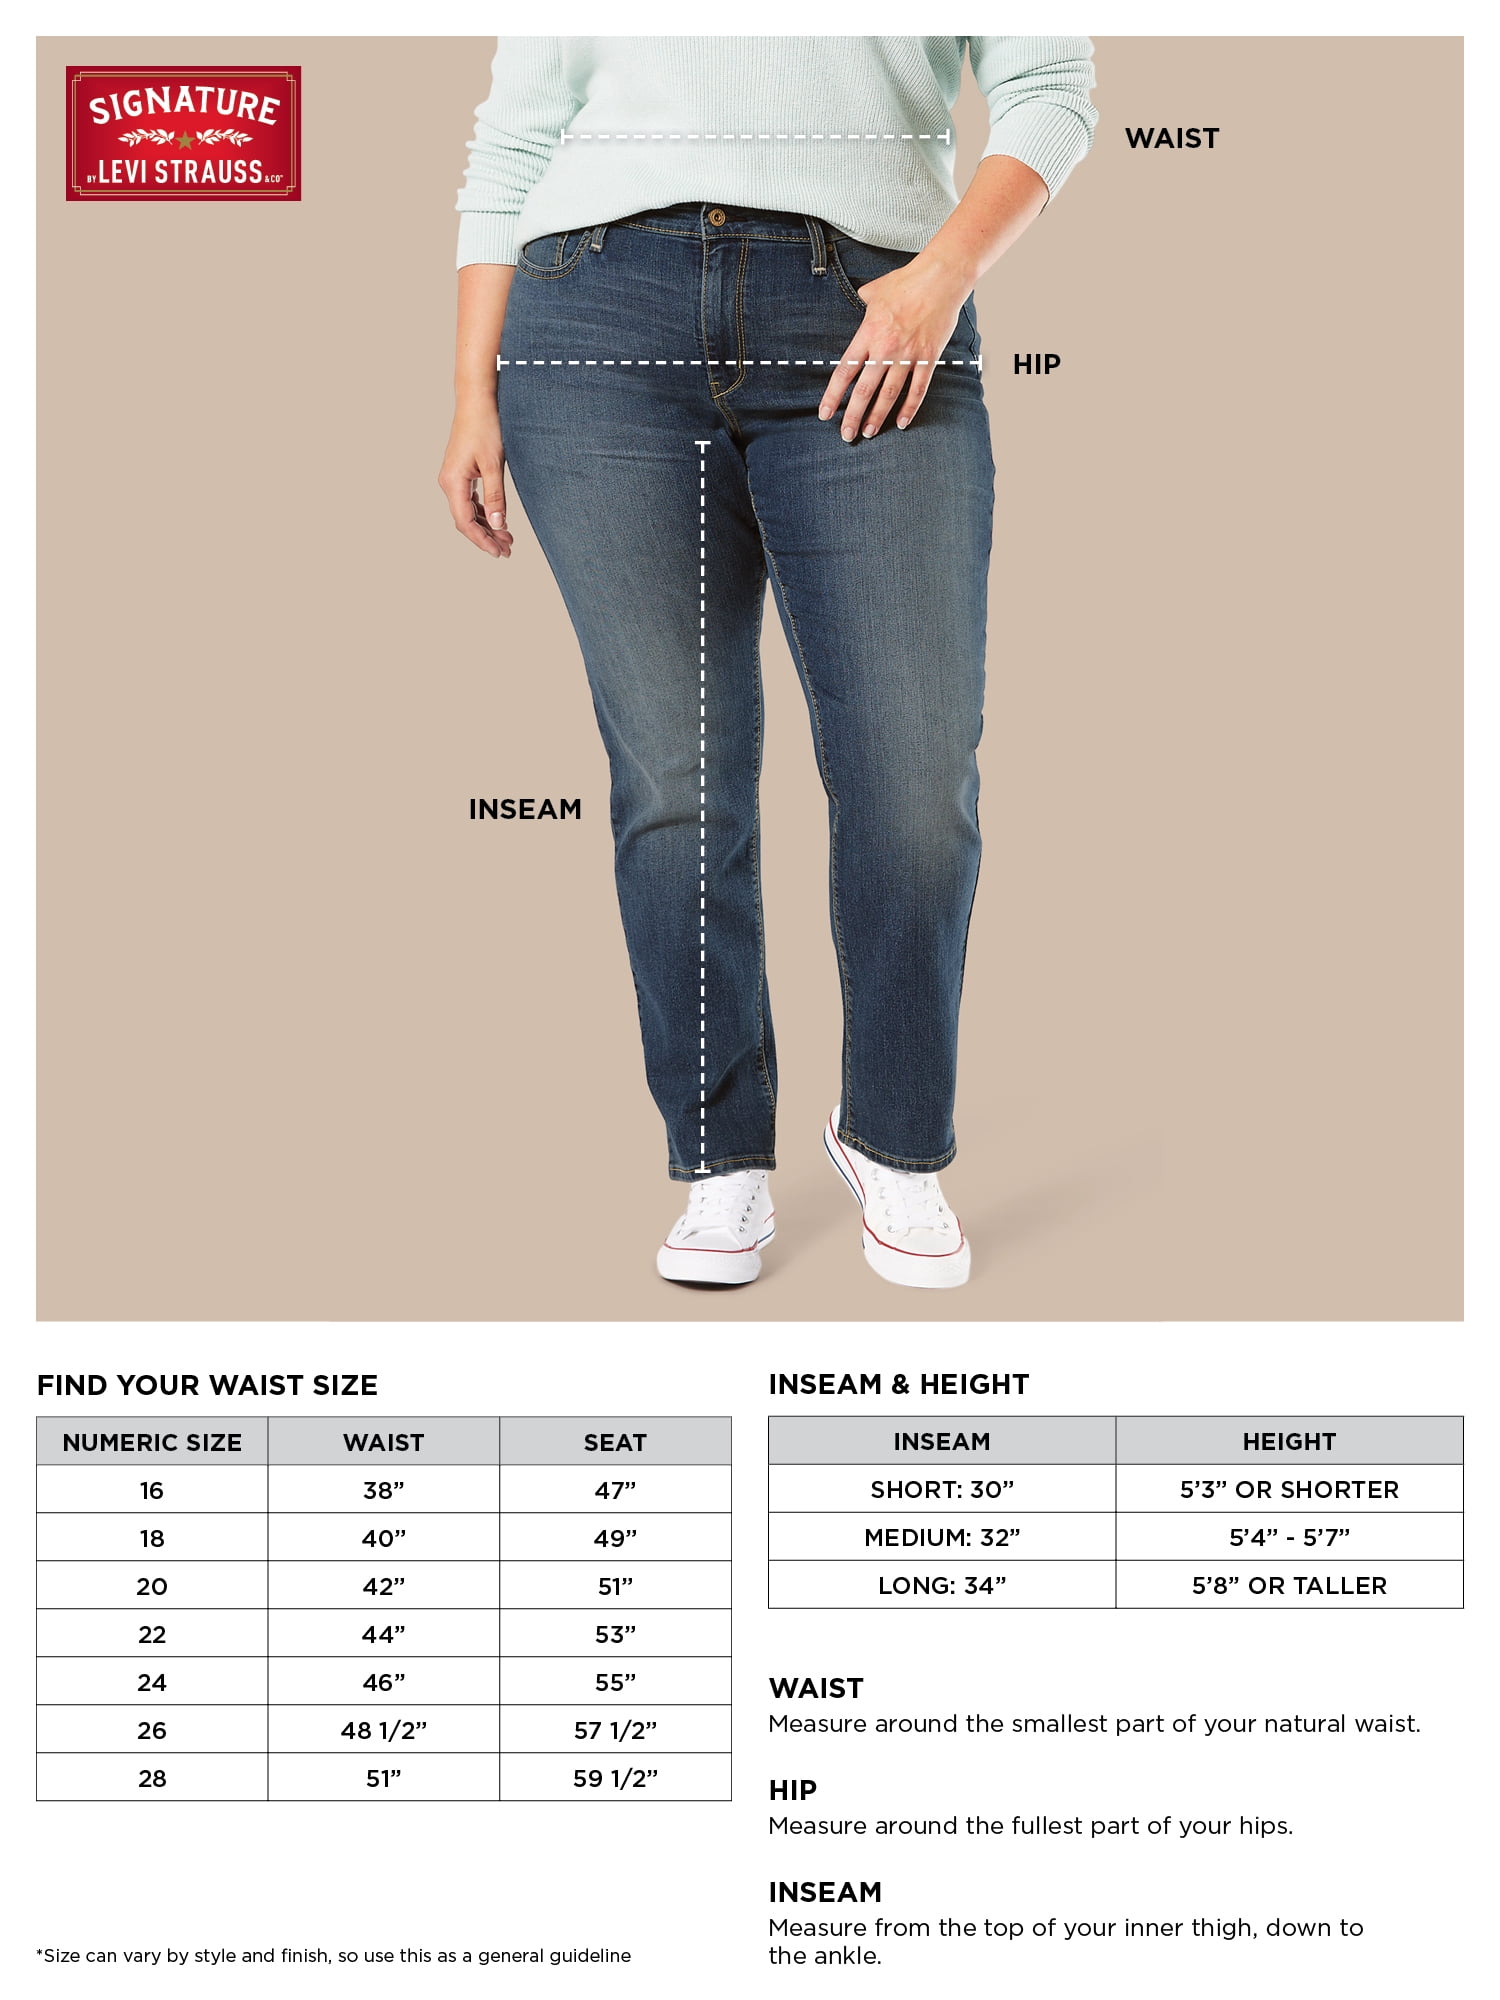 levi signature jeans size chart